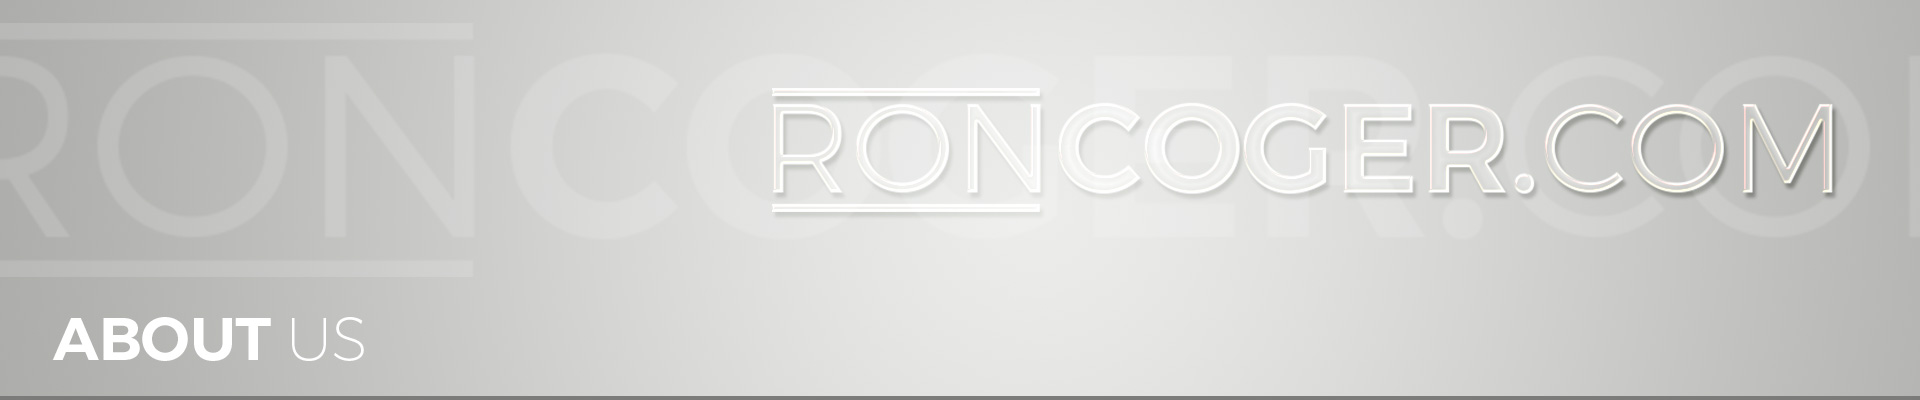 About Roncoger.com